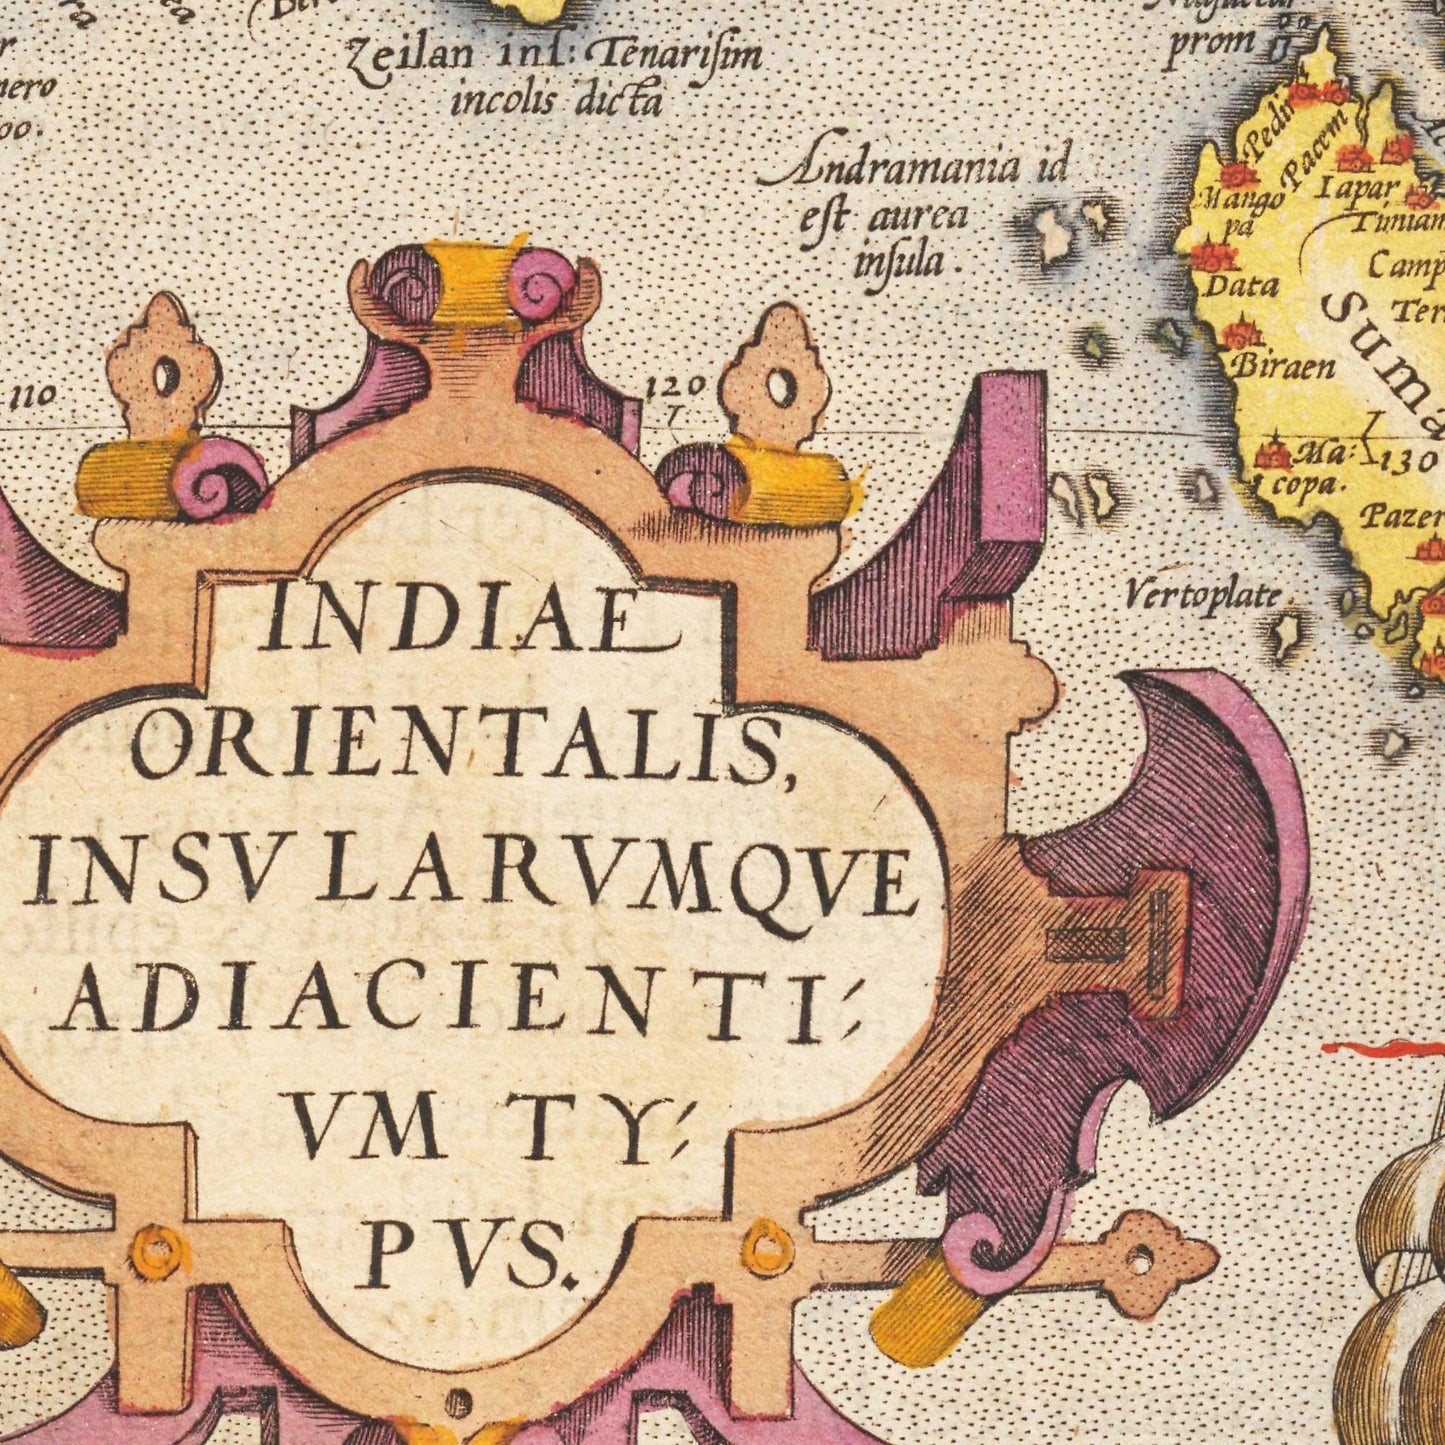 Historische Landkarte Südostasien um 1609